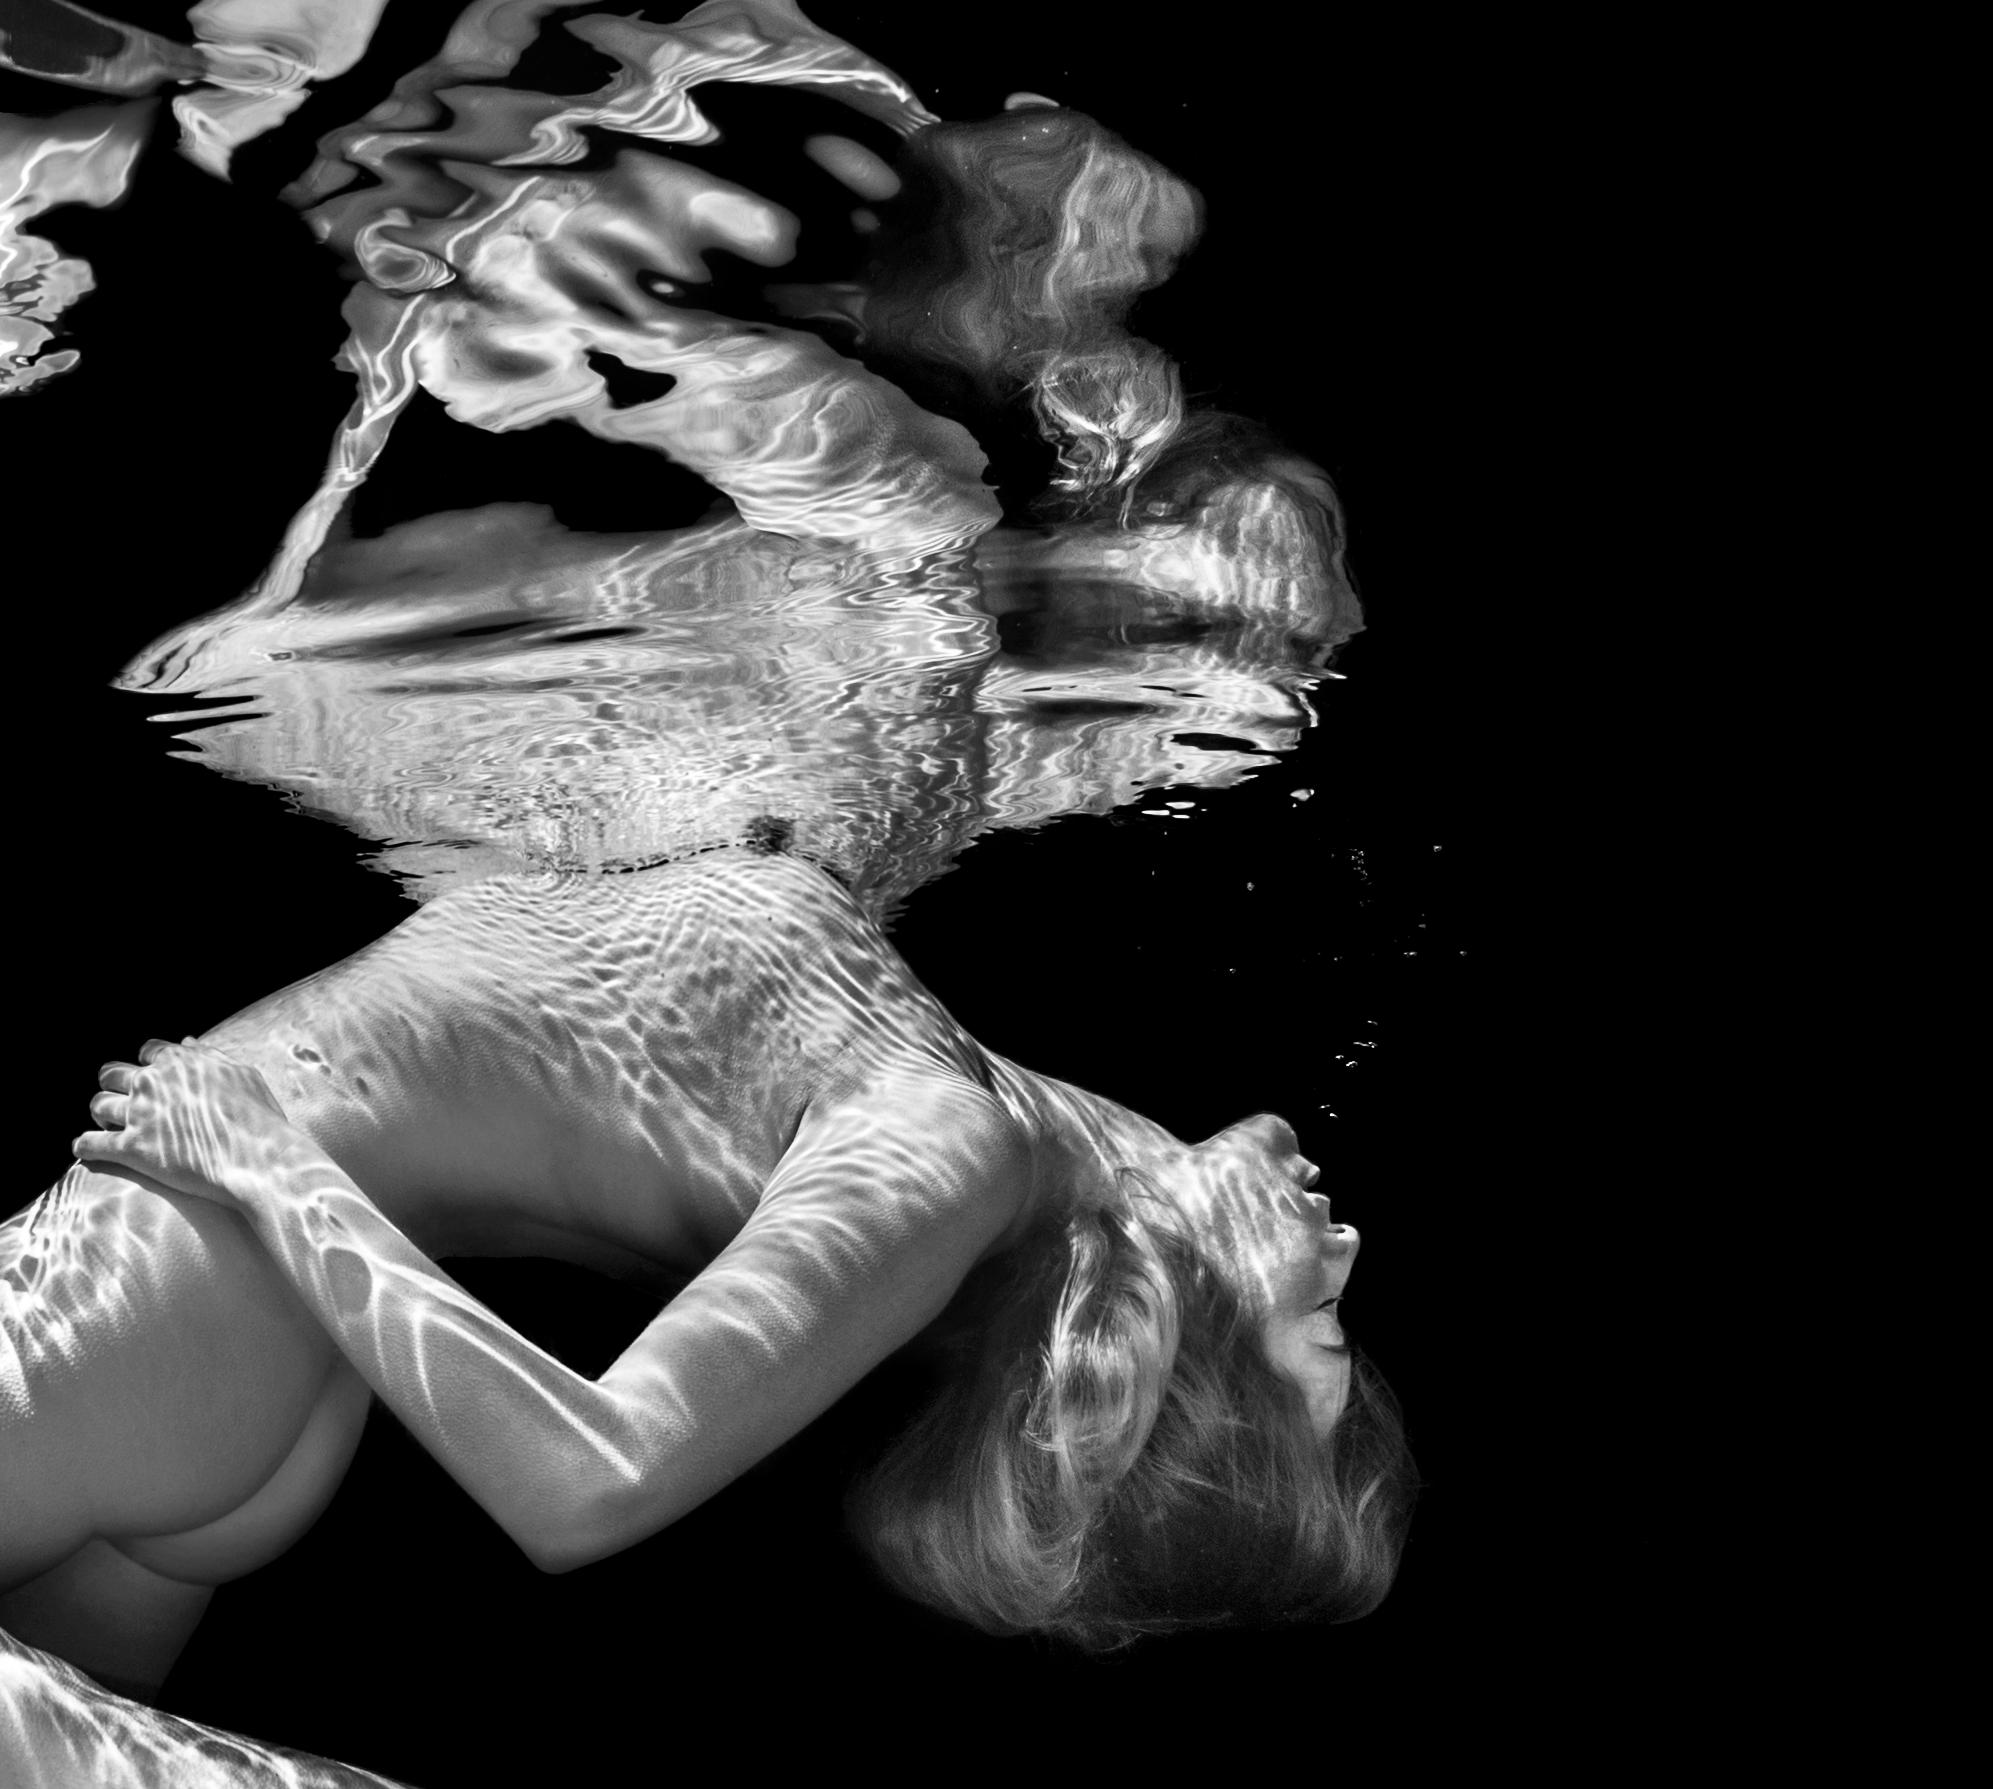 Une photographie sous-marine en noir et blanc de deux jeunes femmes nues dans la piscine.

Tirage pigmentaire original de qualité galerie sur papier d'archives signé par l'artiste.
Edition limitée à 24 exemplaires
Taille du papier : 18x24